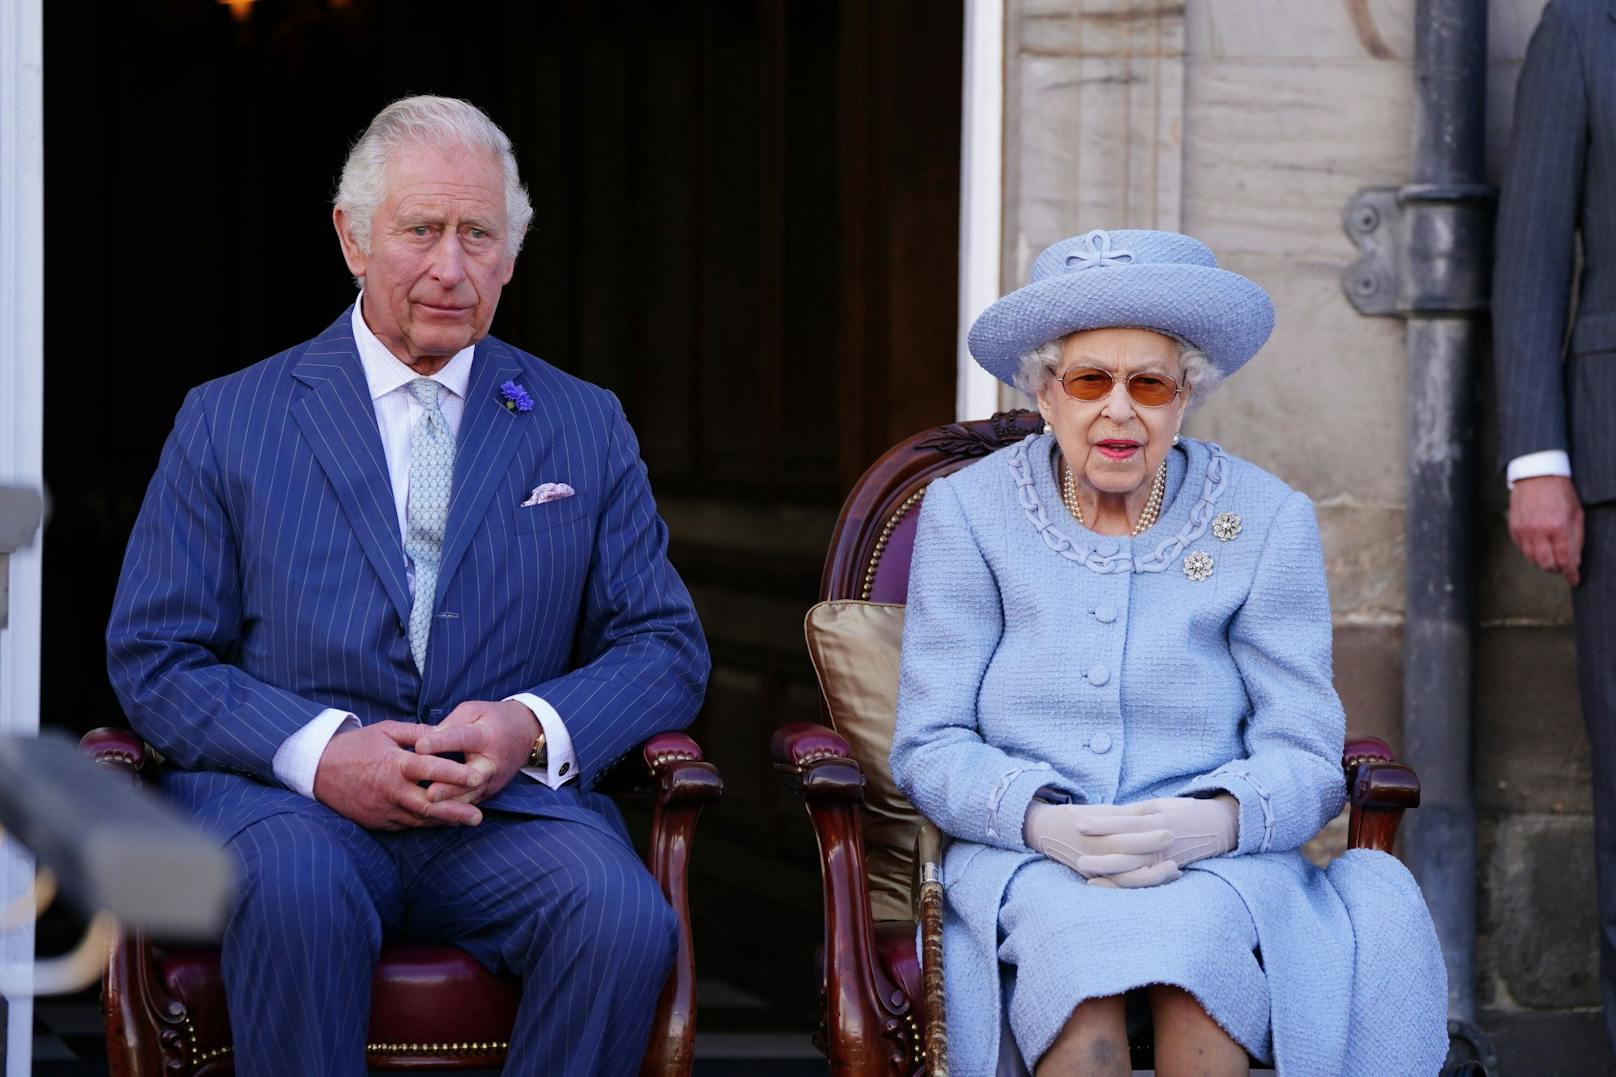 Sorge um Queen! "Unübliche Besuche" von Prinz Charles